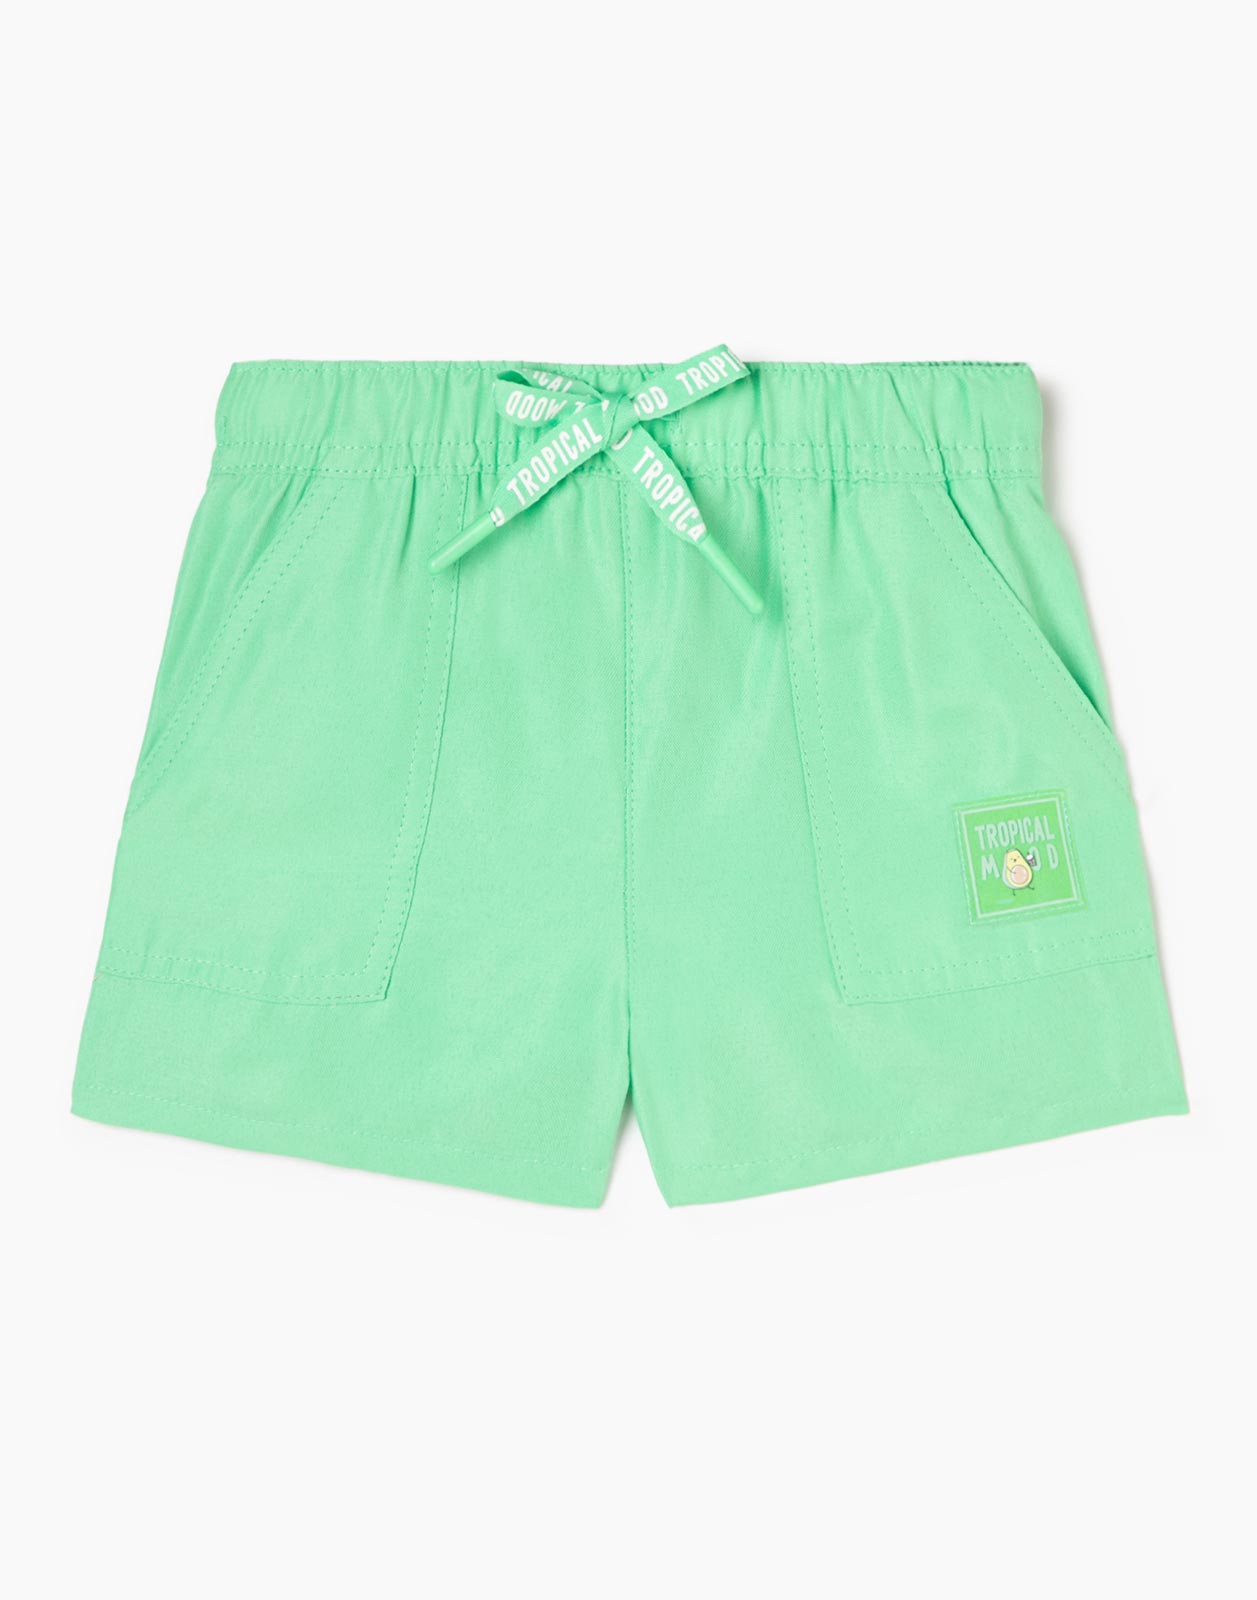 Зелёные шорты с нашивкой Tropical mood для девочки р.80